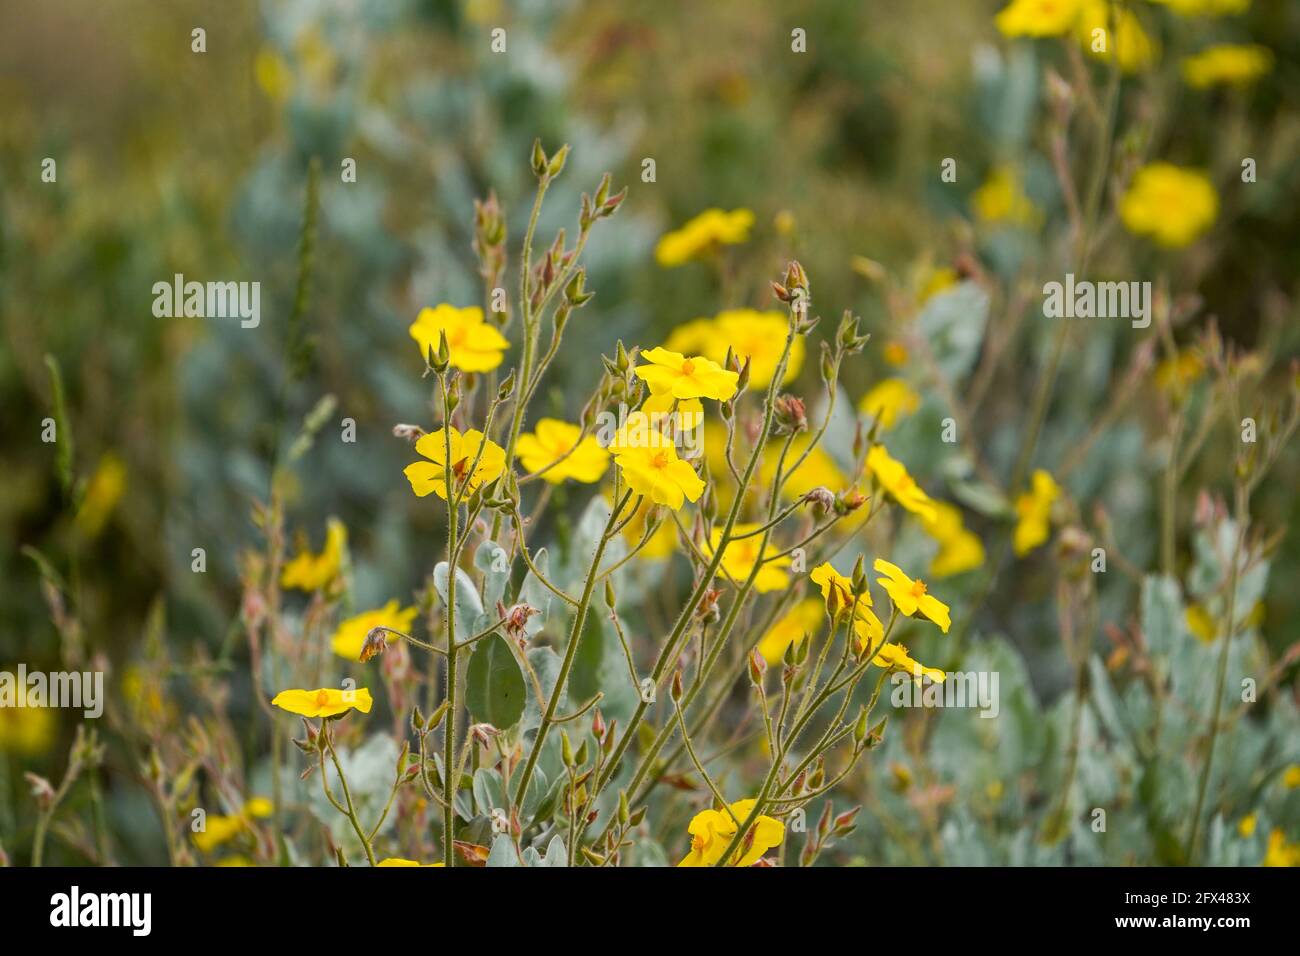 Rosier jaune, Halimium atriplicifolium, plante méditerranéenne, floraison, Andalousie, Espagne. Banque D'Images